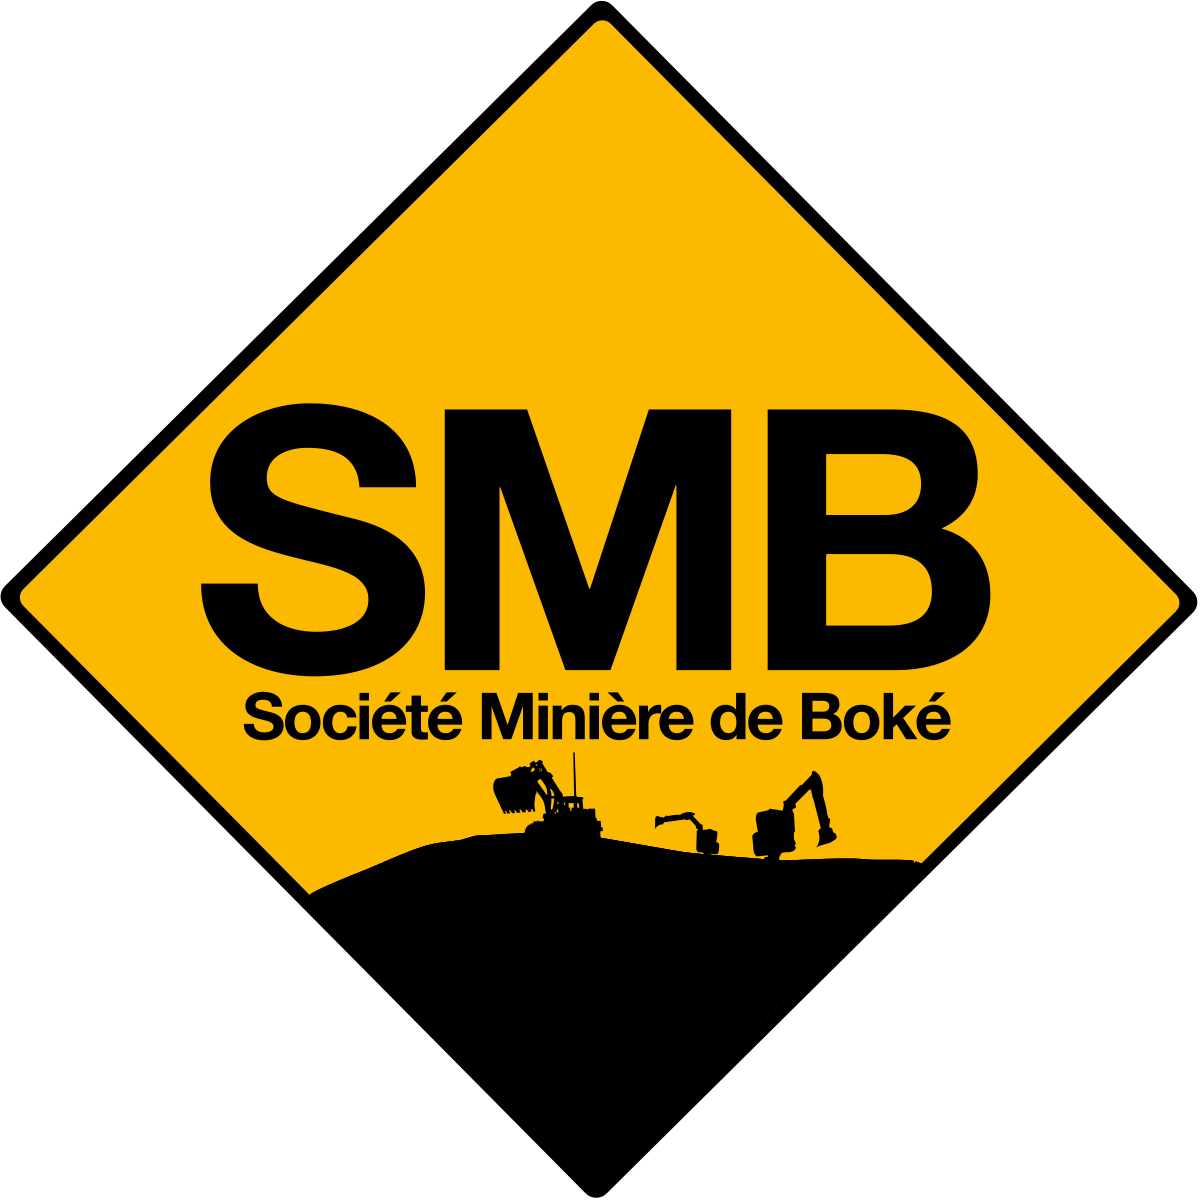 Offre d’emploi : la Société Minière de Boké recherche 10 Opérateurs Buildozers